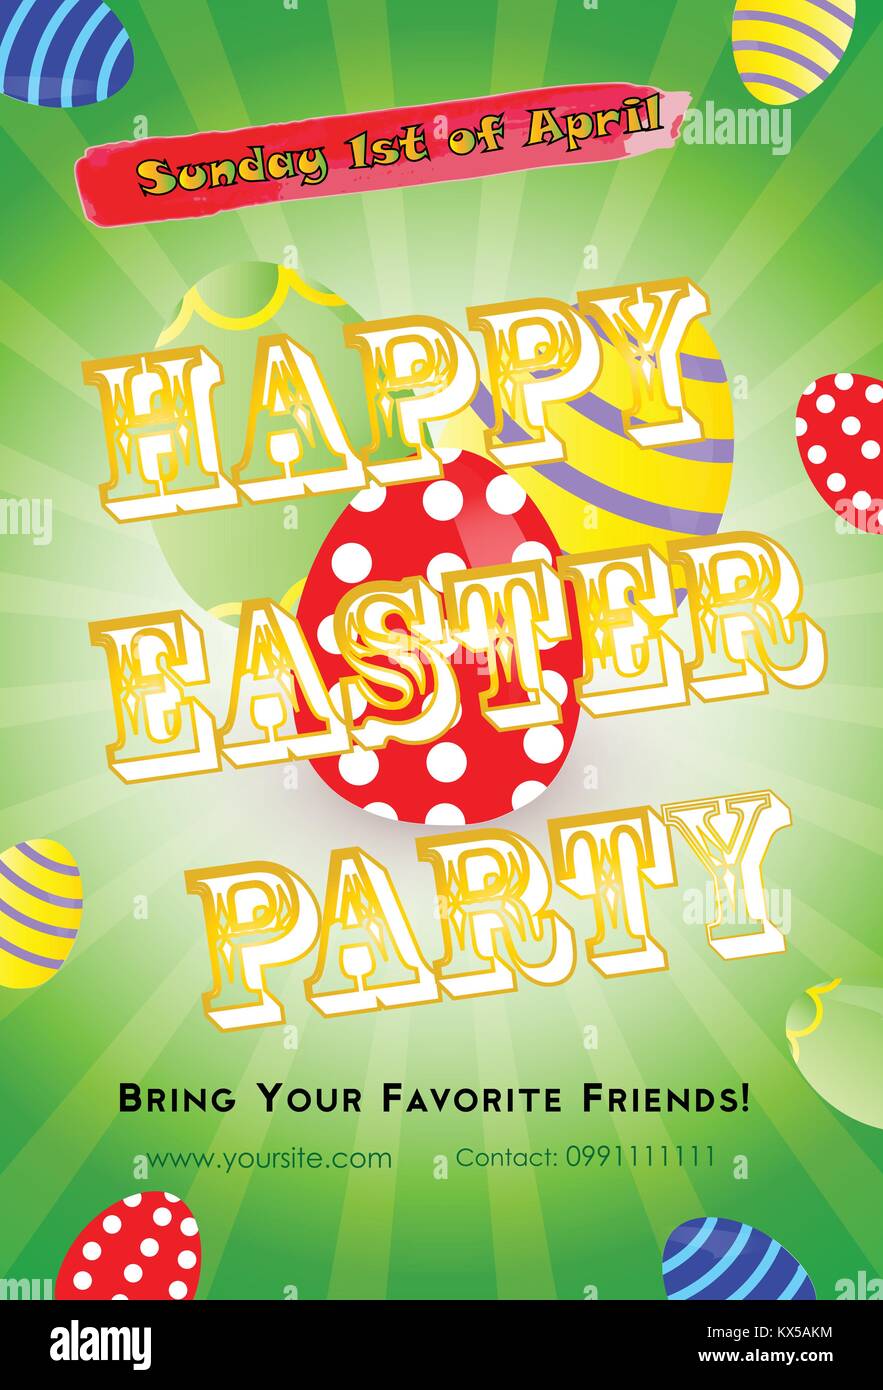 Ostern Party Einladung Flyer Vorlage Mit Bunten Eier Auf Grunem Hintergrund Und Text Frohe Ostern Party Stock Vektorgrafik Alamy